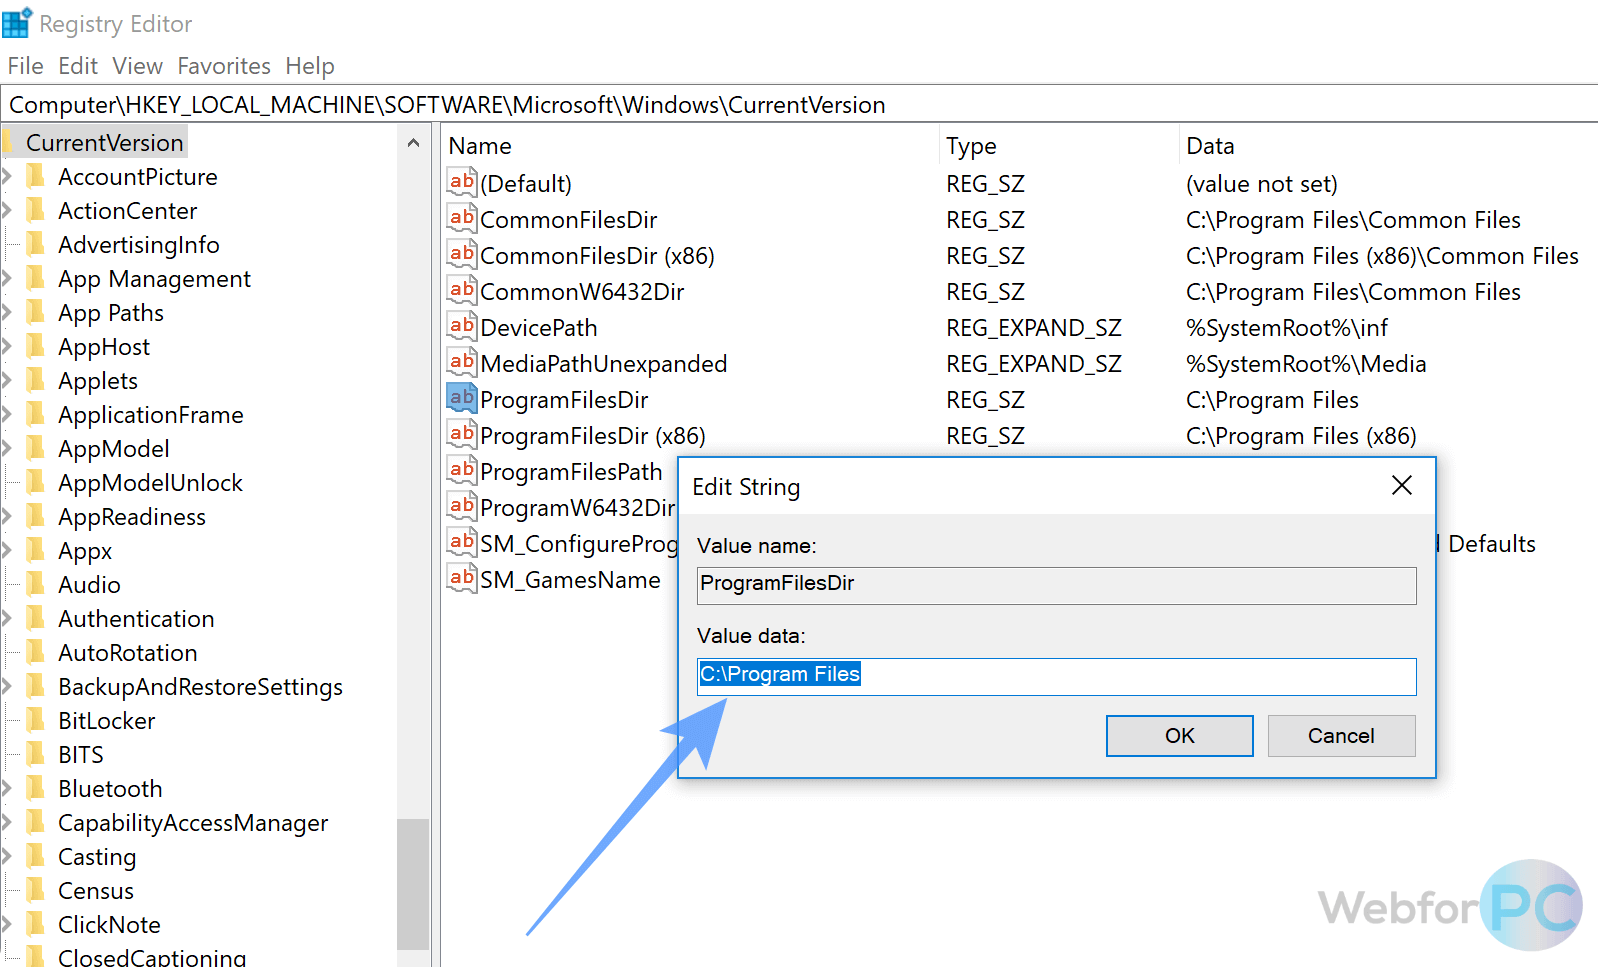 изменяя каталог по умолчанию, вы можете установить каталог в Windows 7